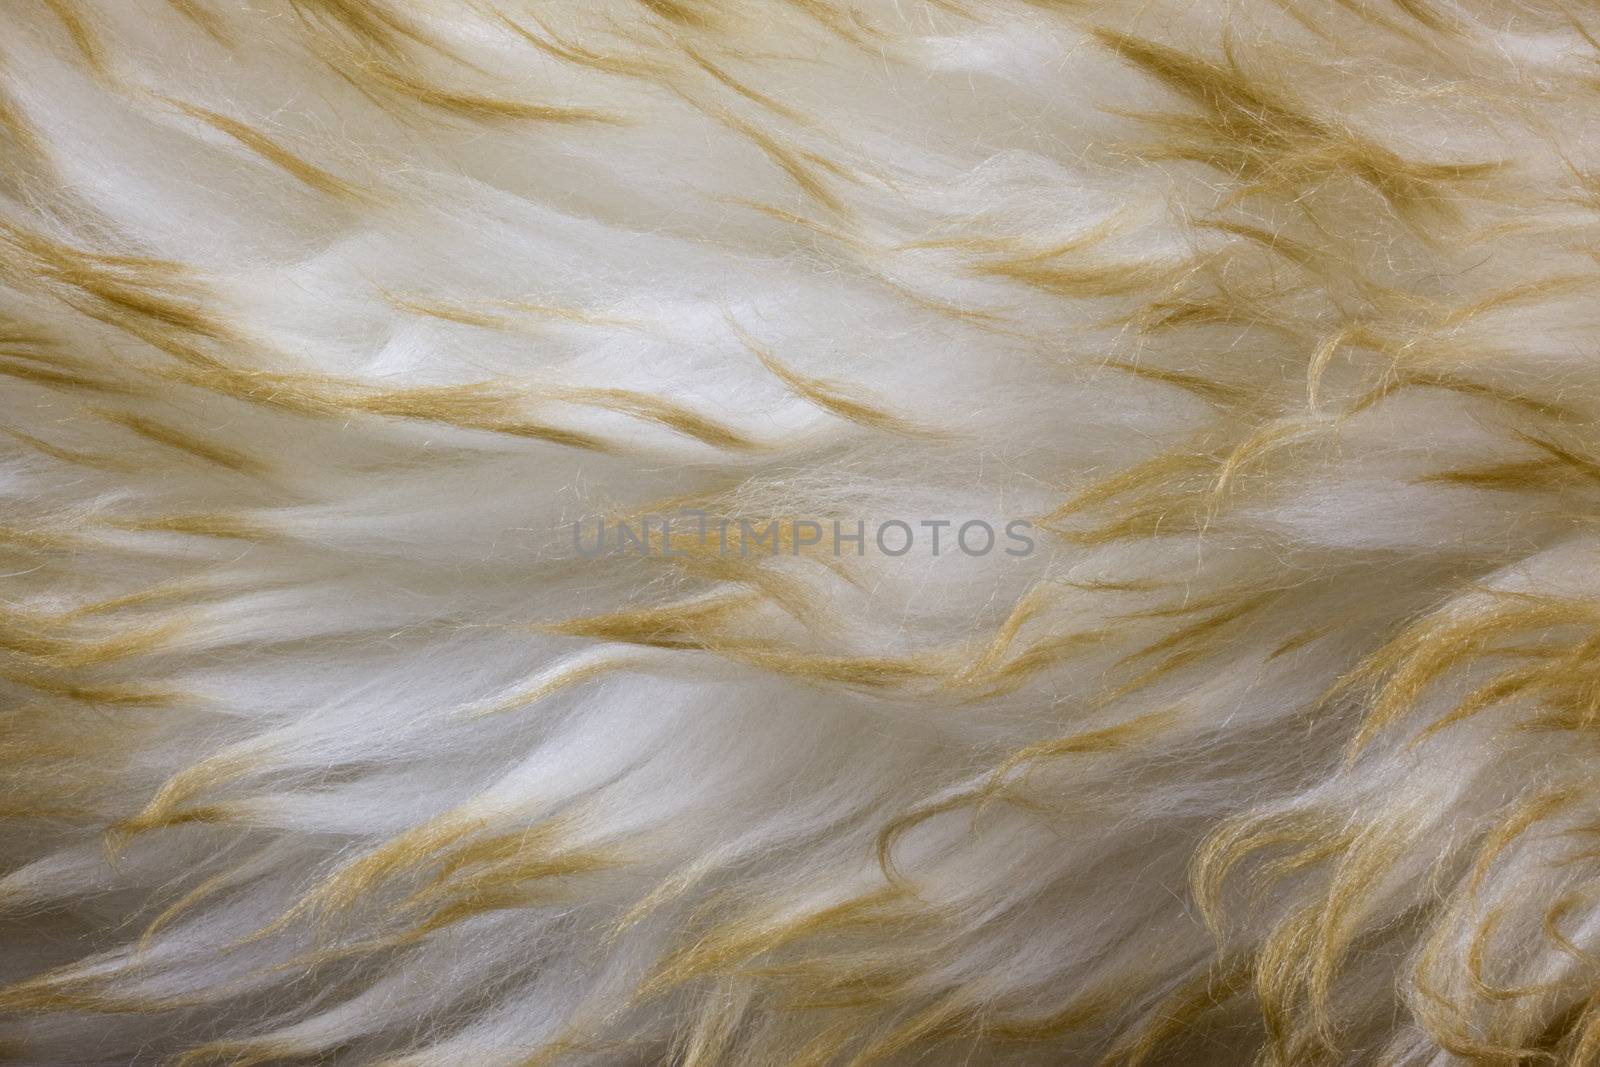 lambskin - fur background with a wavy pattern by PixelsAway